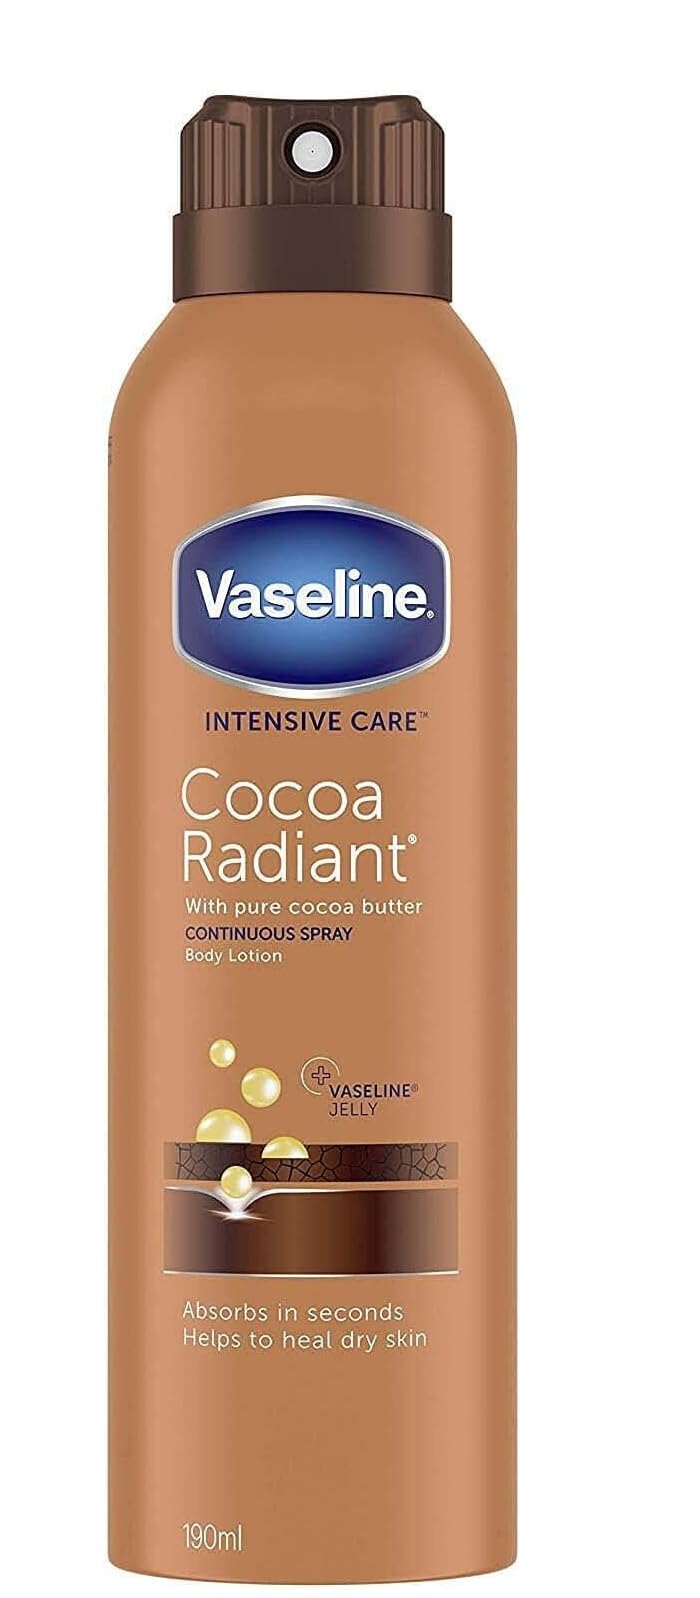 6er Pack - Vaseline Body Lotion Spray - Kakao Radiant - repariert trockene Haut - 190ml